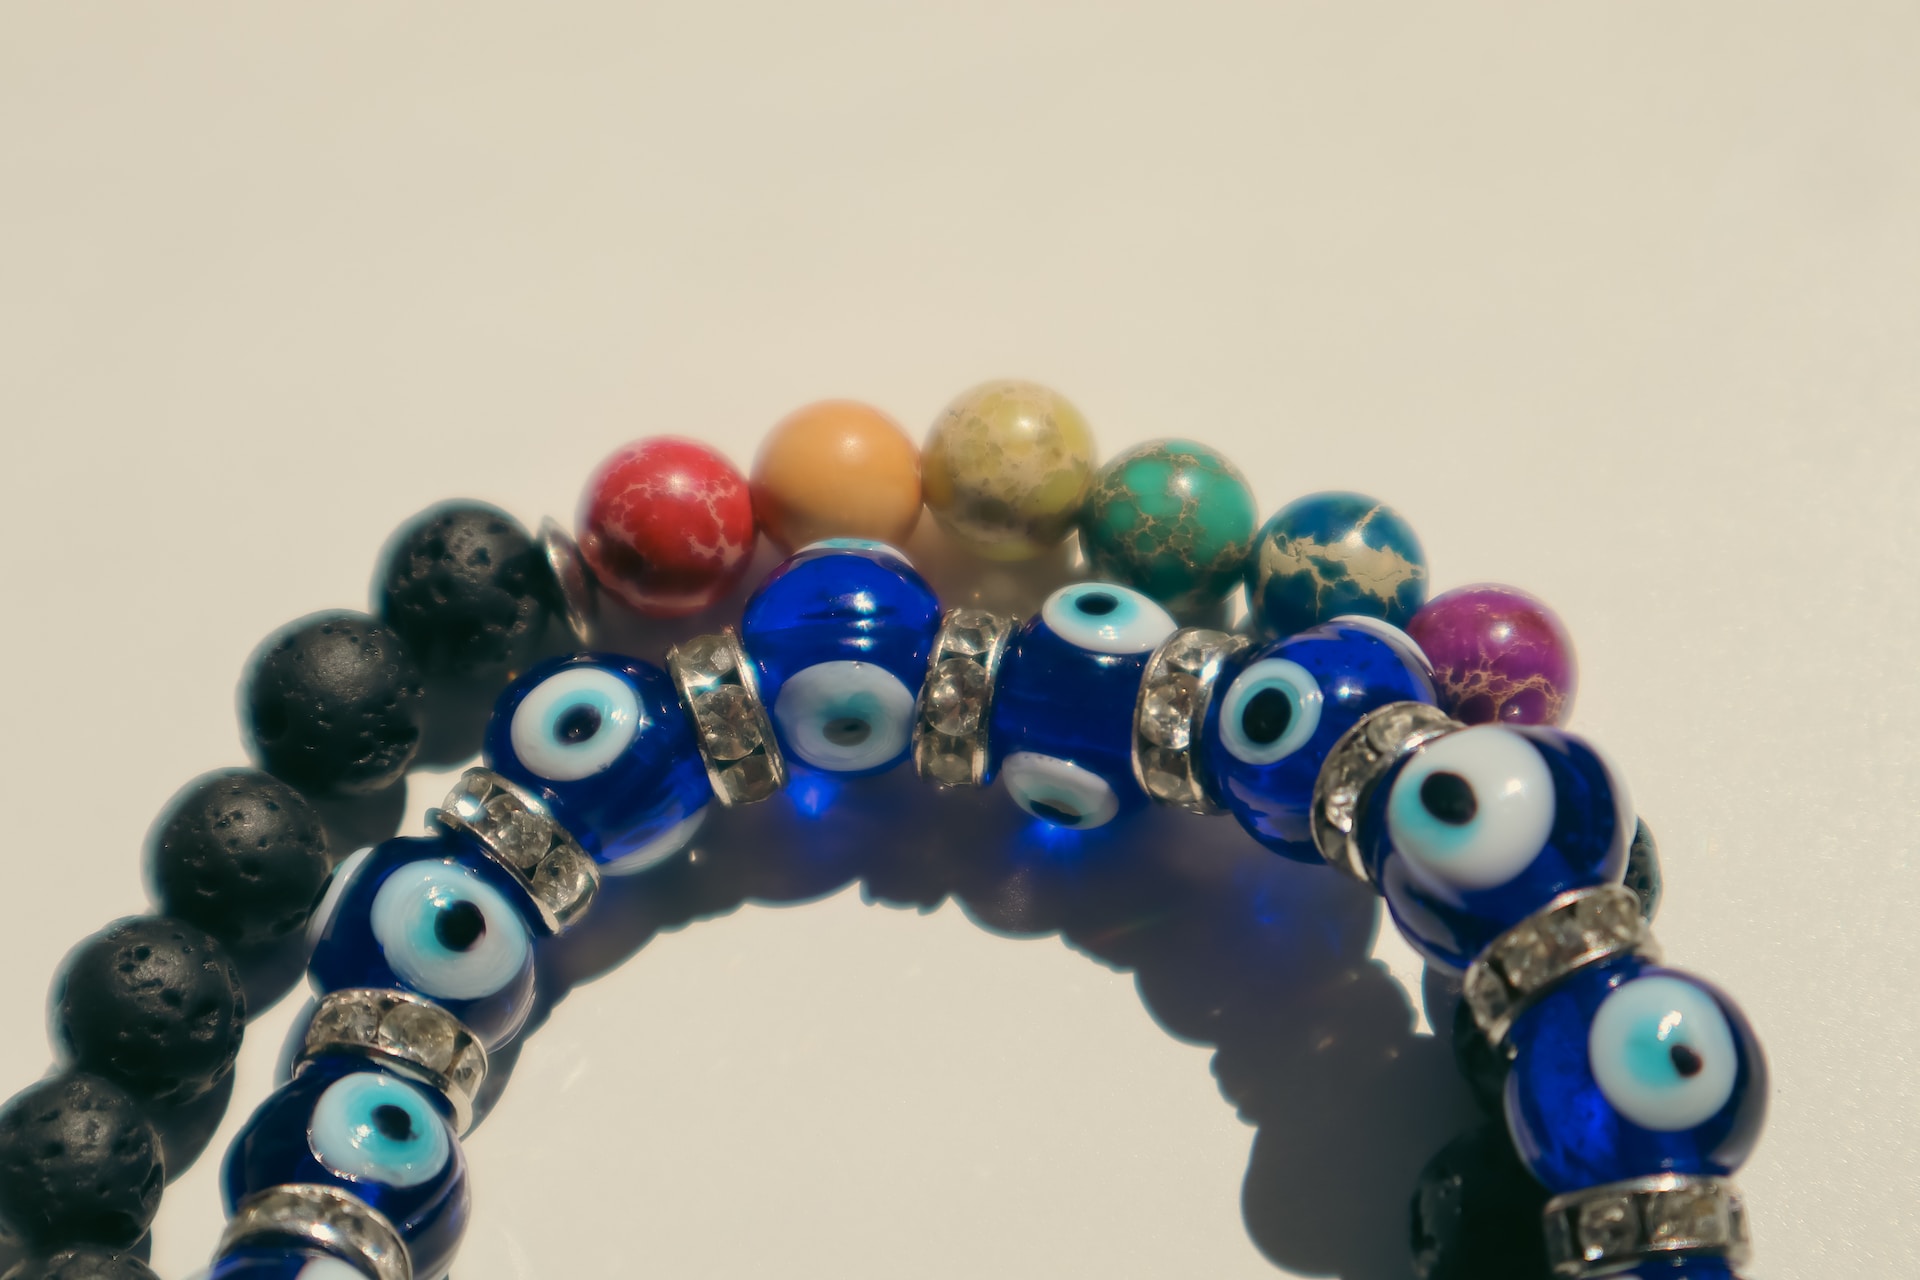 Evil Eye Necklace: Warding off Negativity with Style